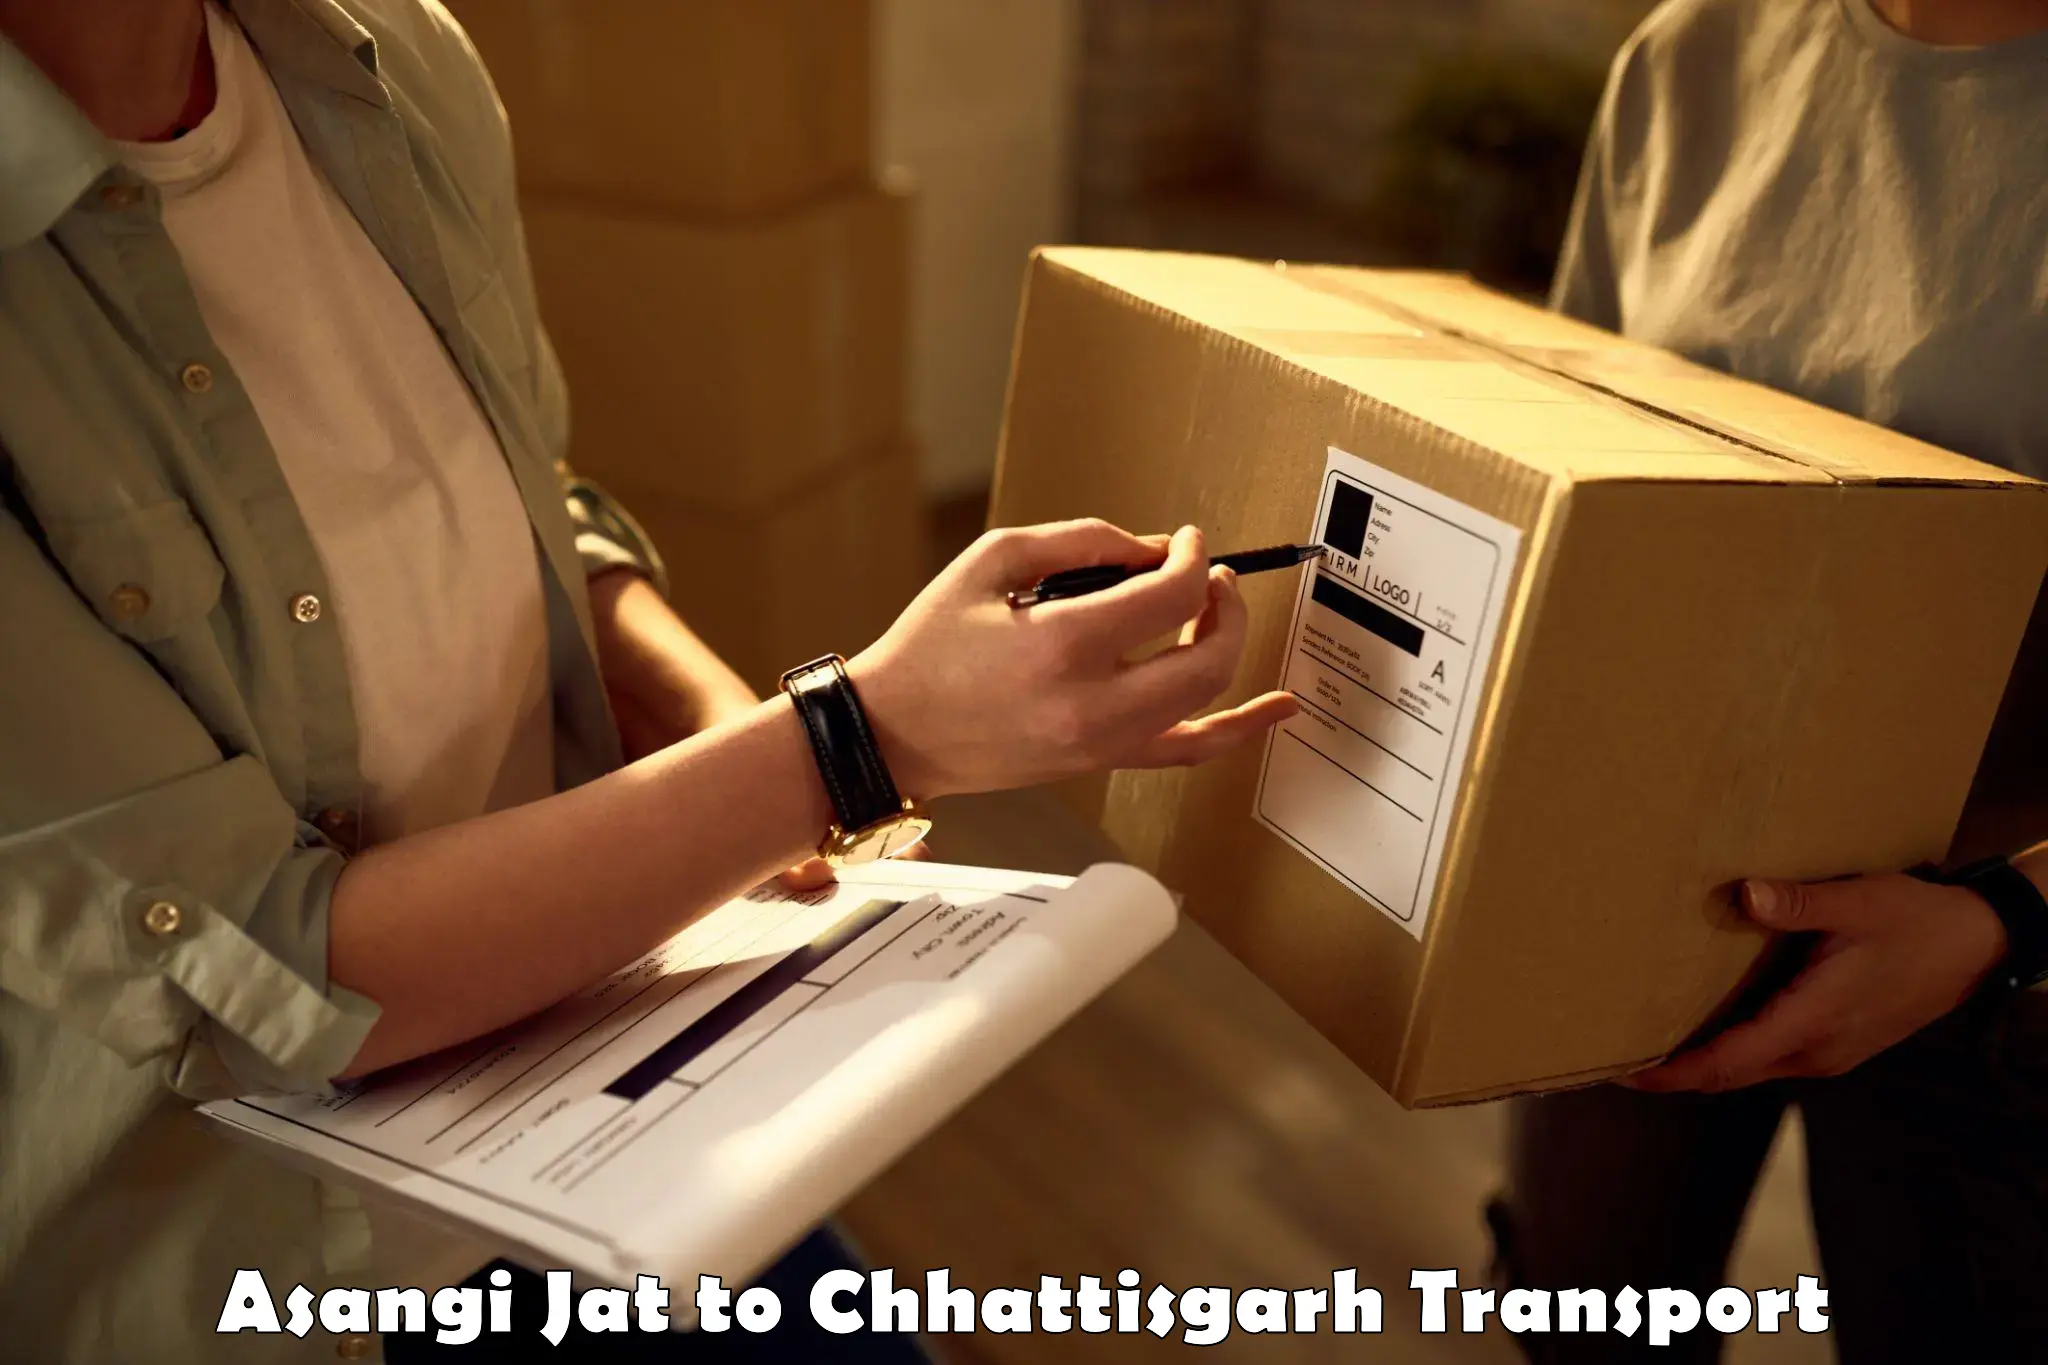 Furniture transport service Asangi Jat to Dongargarh